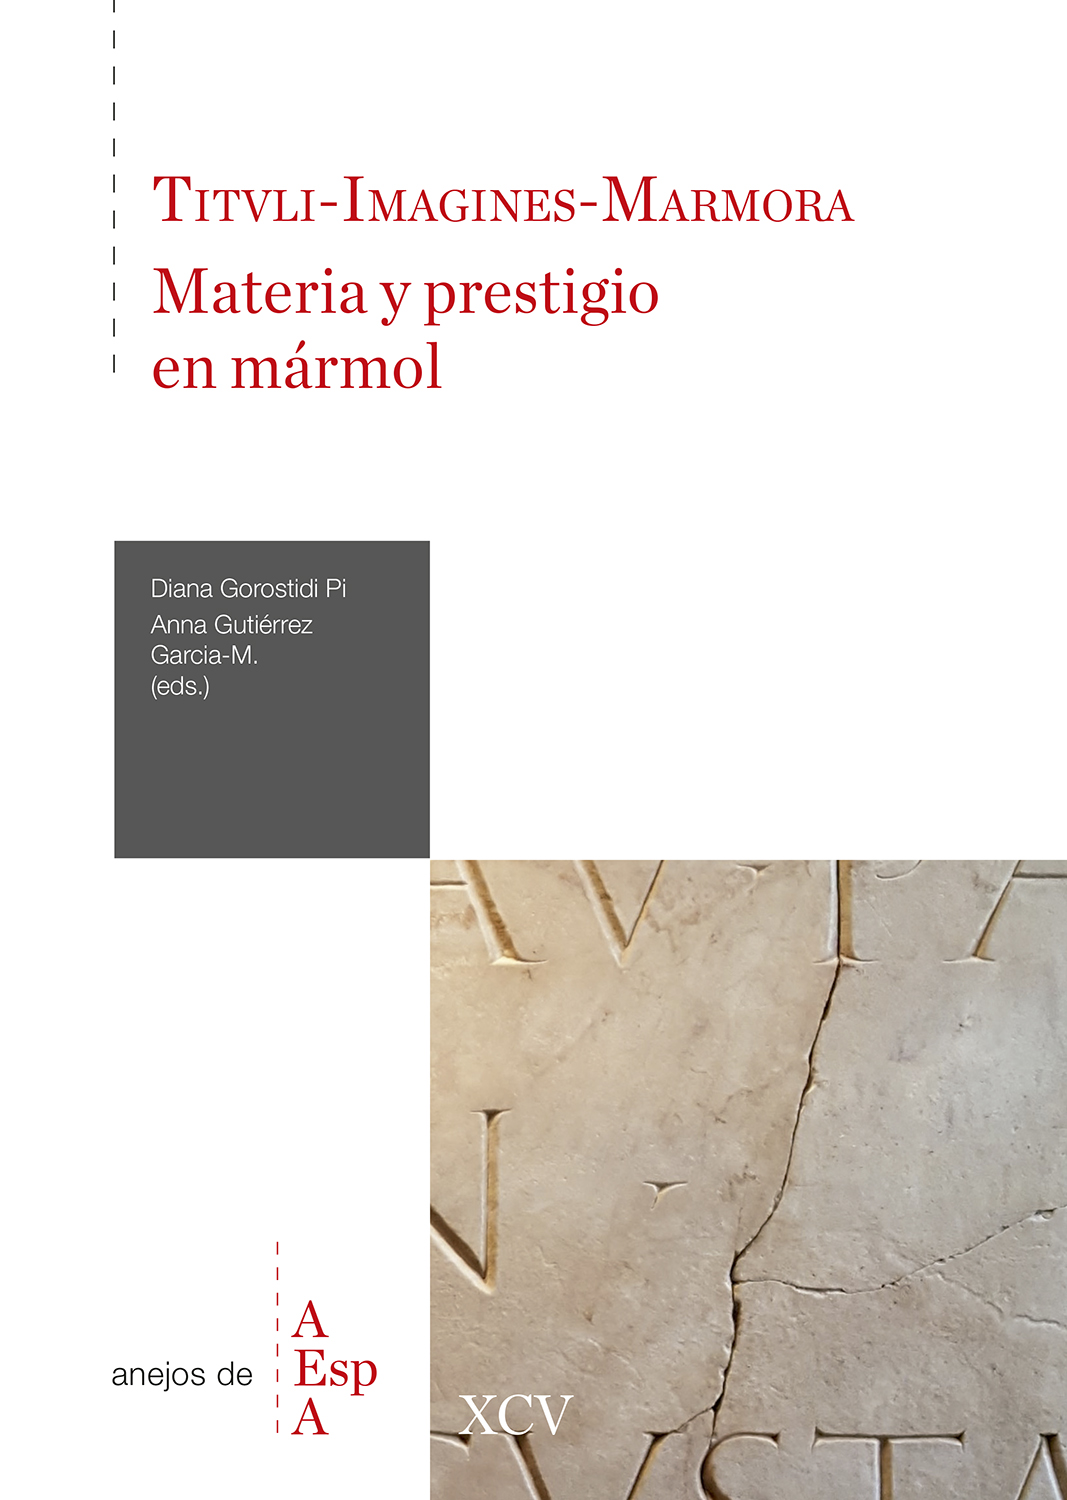 Tituli-Imagines-Marmora: materia y prestigio en mármol